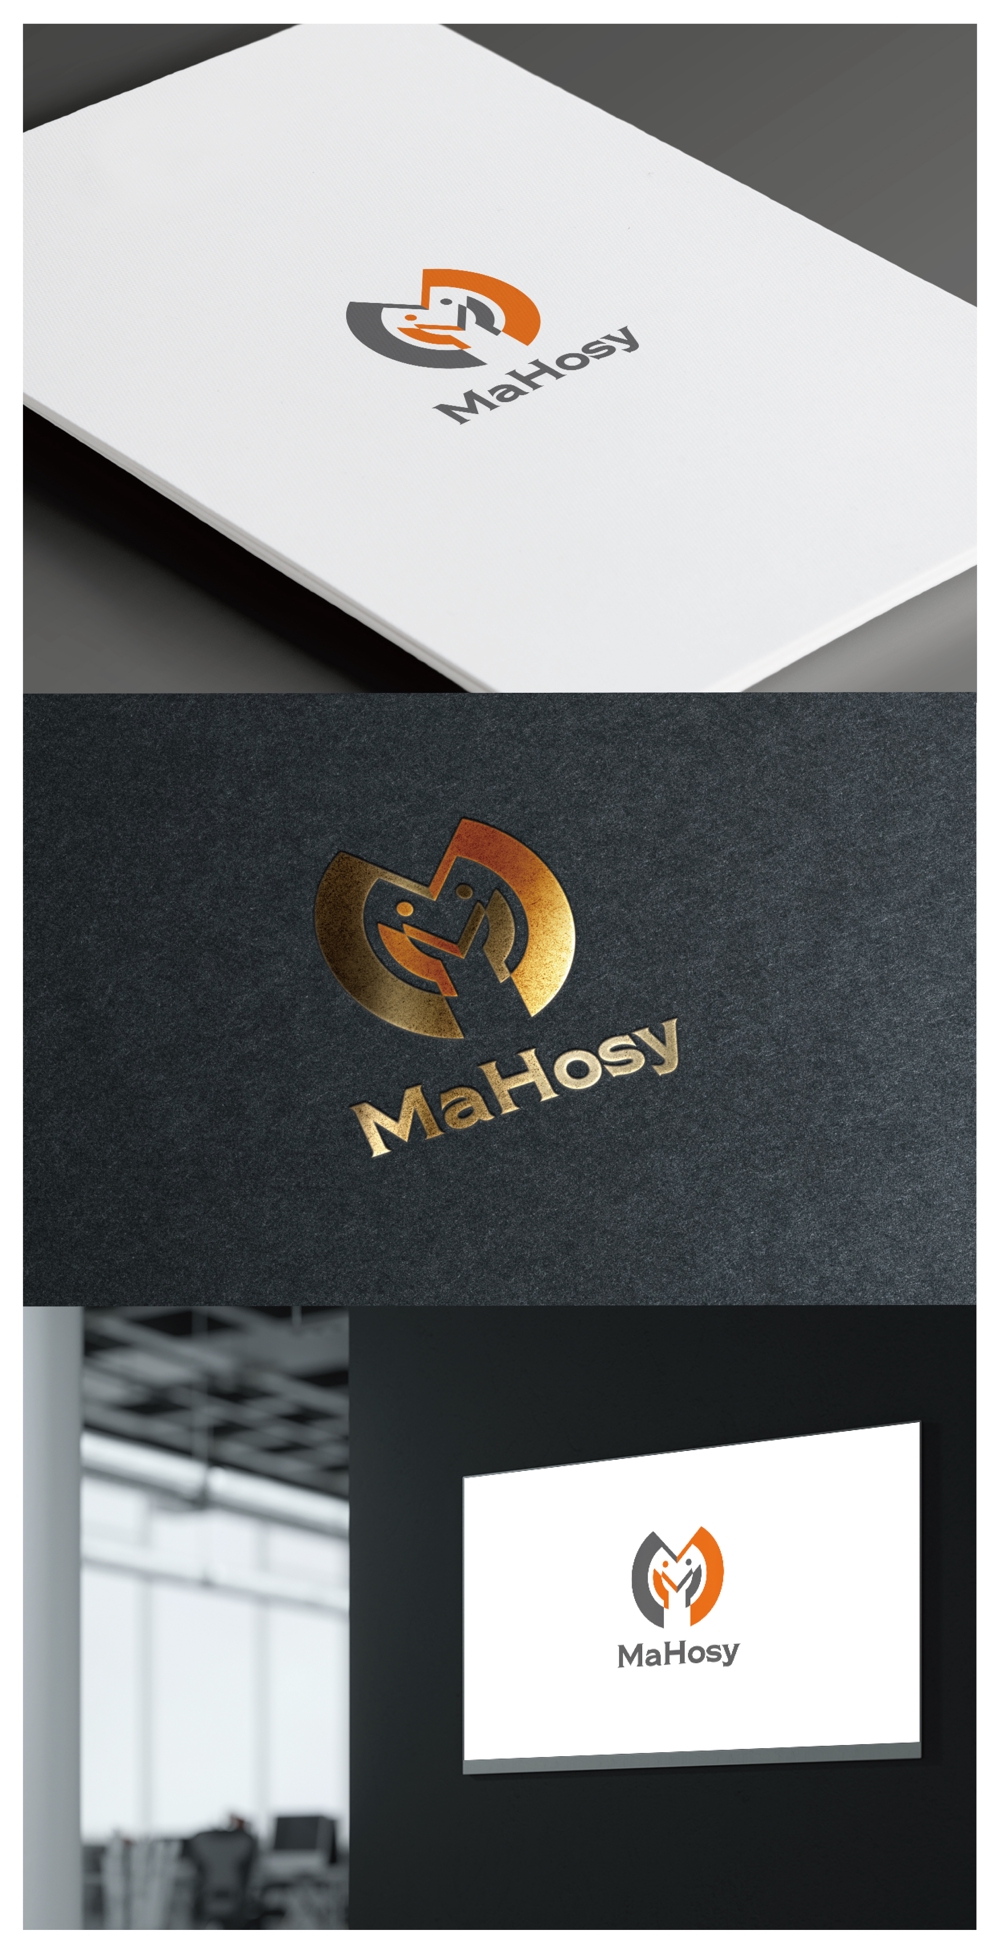 MaHosy_logo02_01.jpg